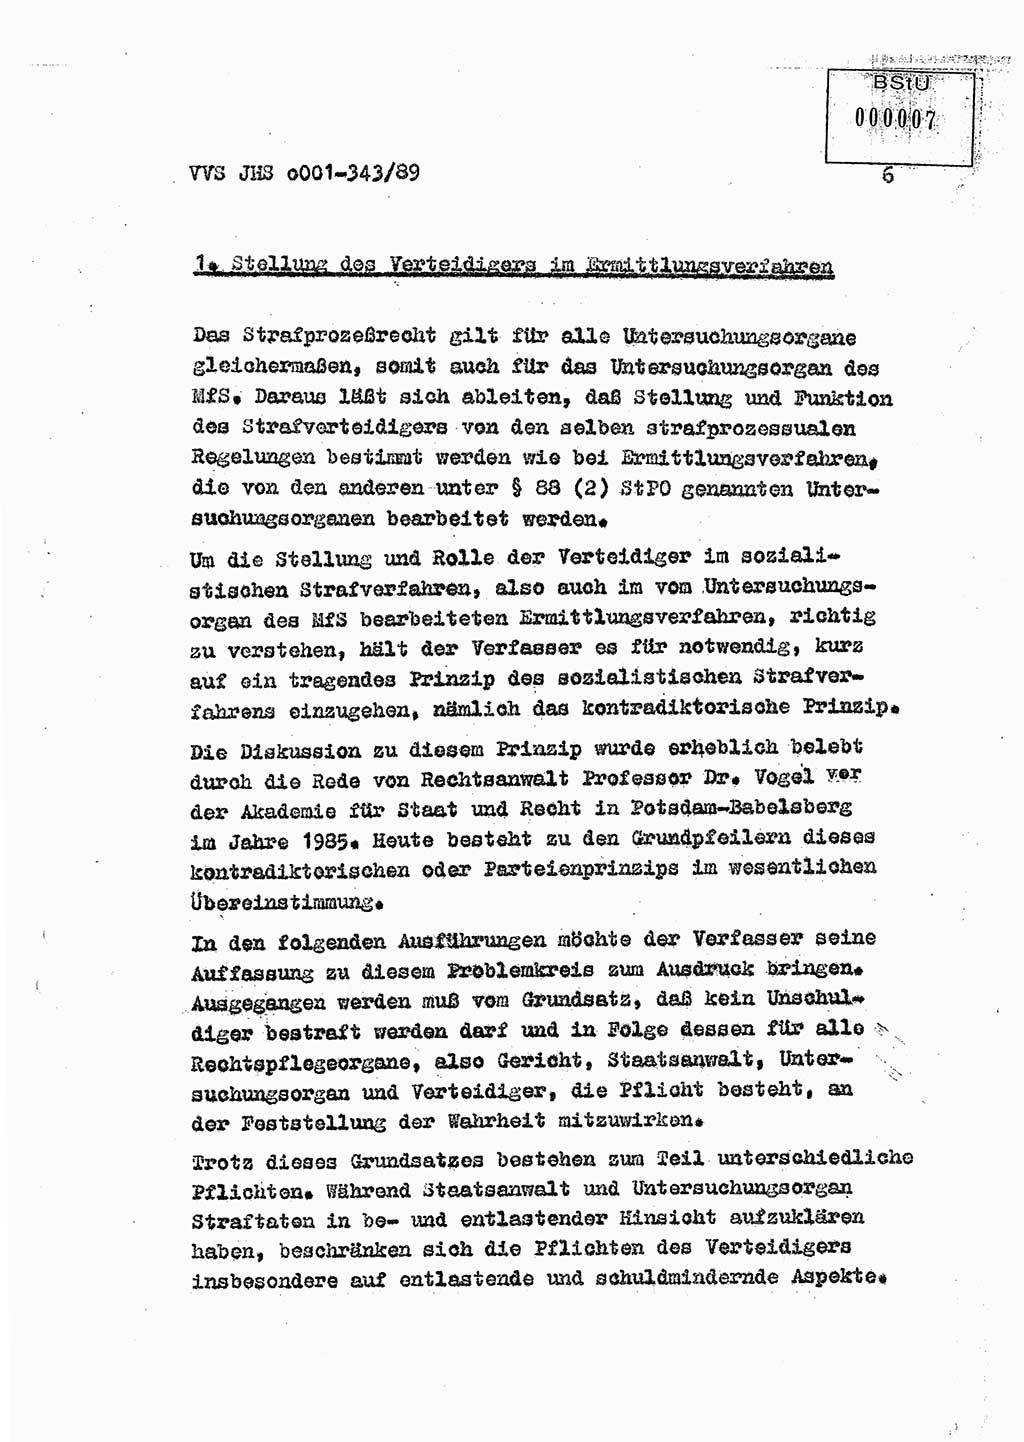 Diplomarbeit Offiziersschüler Axel Henschke (HA Ⅸ/9), Ministerium für Staatssicherheit (MfS) [Deutsche Demokratische Republik (DDR)], Juristische Hochschule (JHS), Vertrauliche Verschlußsache (VVS) o001-343/89, Potsdam 1989, Seite 6 (Dipl.-Arb. MfS DDR JHS VVS o001-343/89 1989, S. 6)